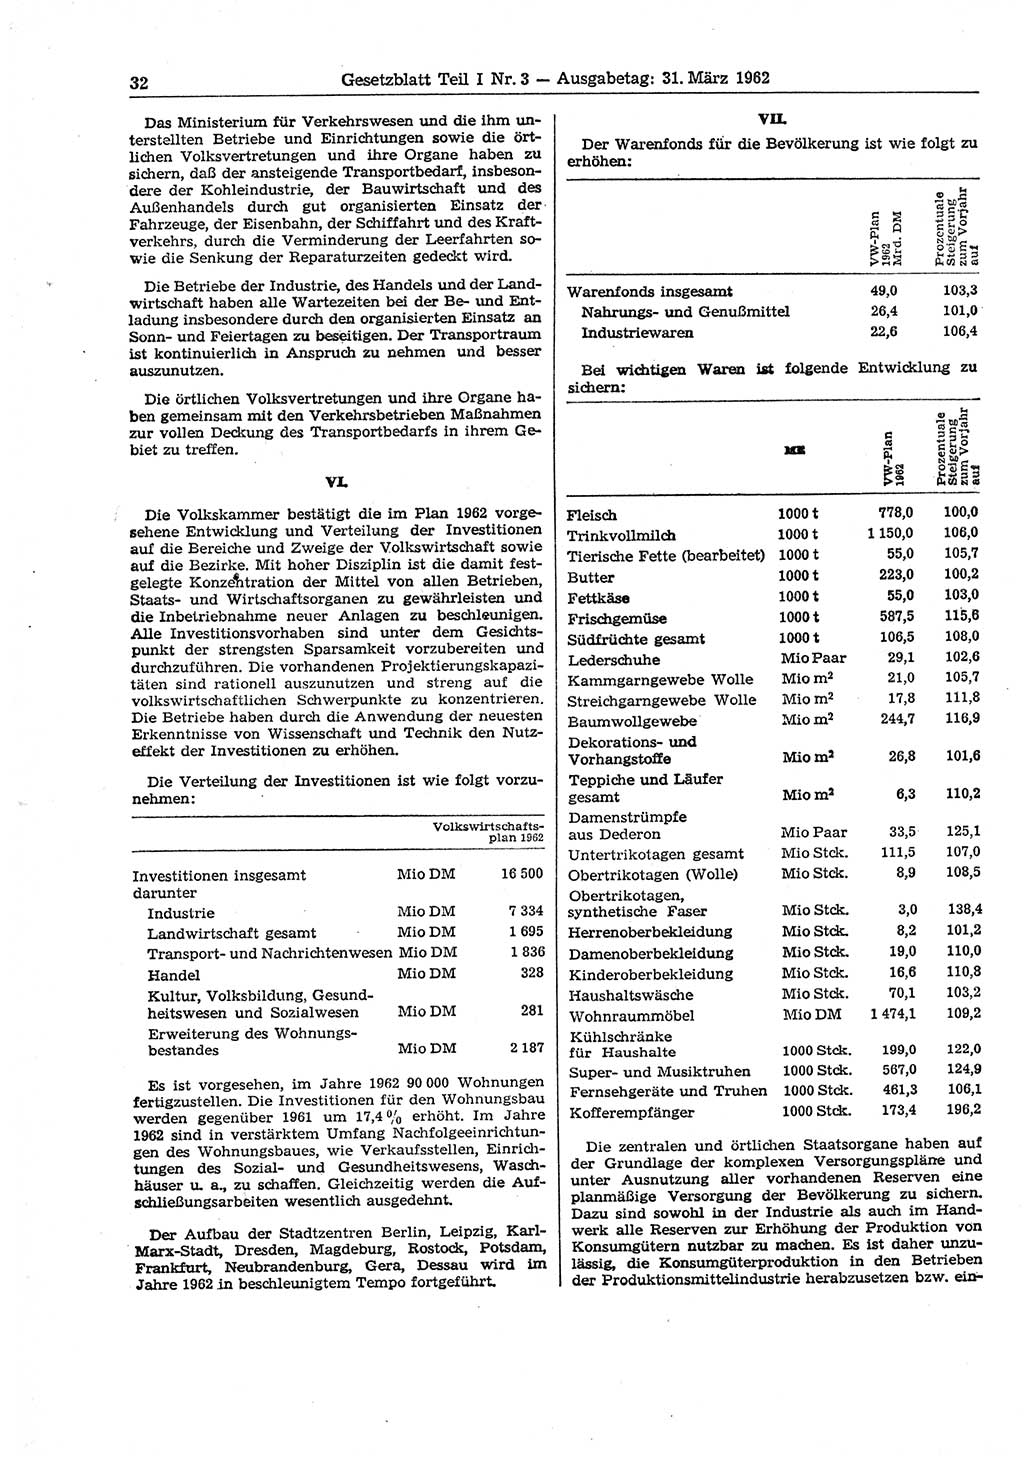 Gesetzblatt (GBl.) der Deutschen Demokratischen Republik (DDR) Teil Ⅰ 1962, Seite 32 (GBl. DDR Ⅰ 1962, S. 32)